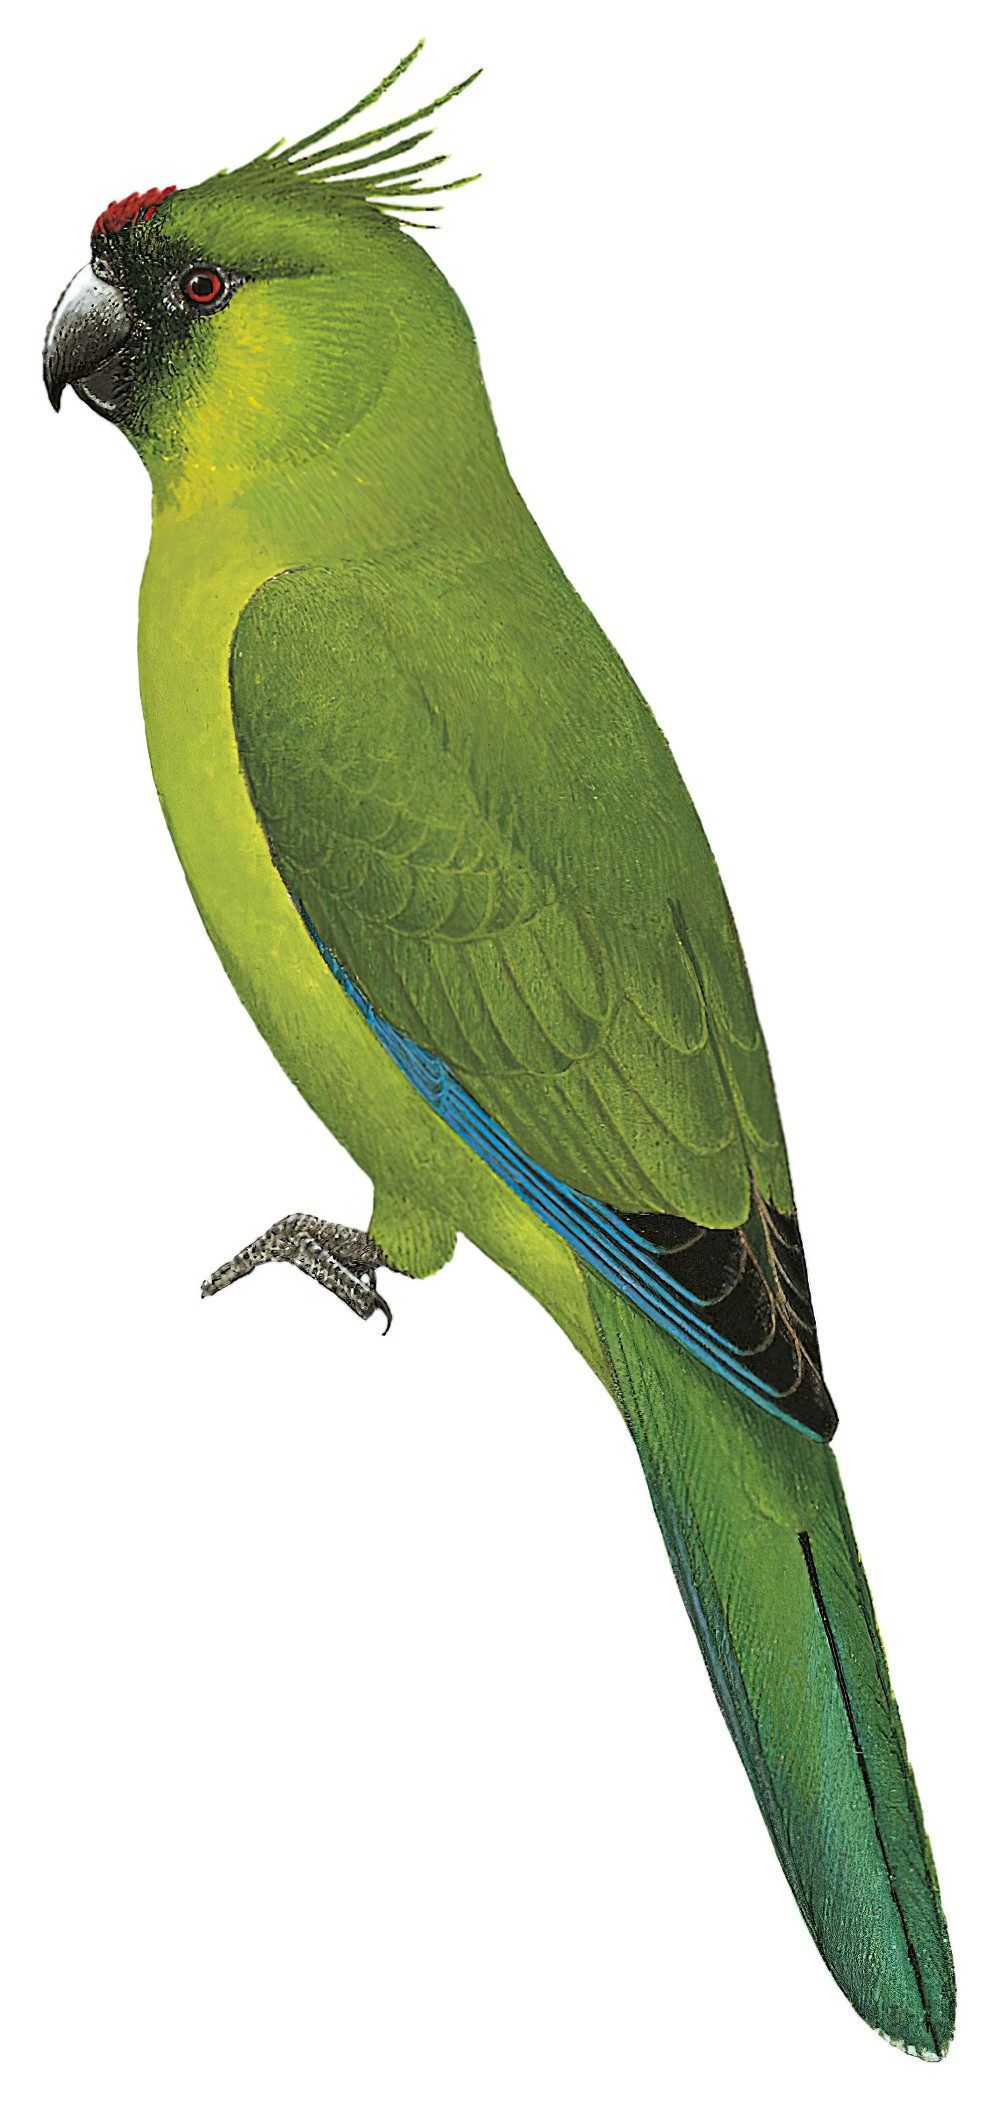 Ouvea Parakeet / Eunymphicus uvaeensis